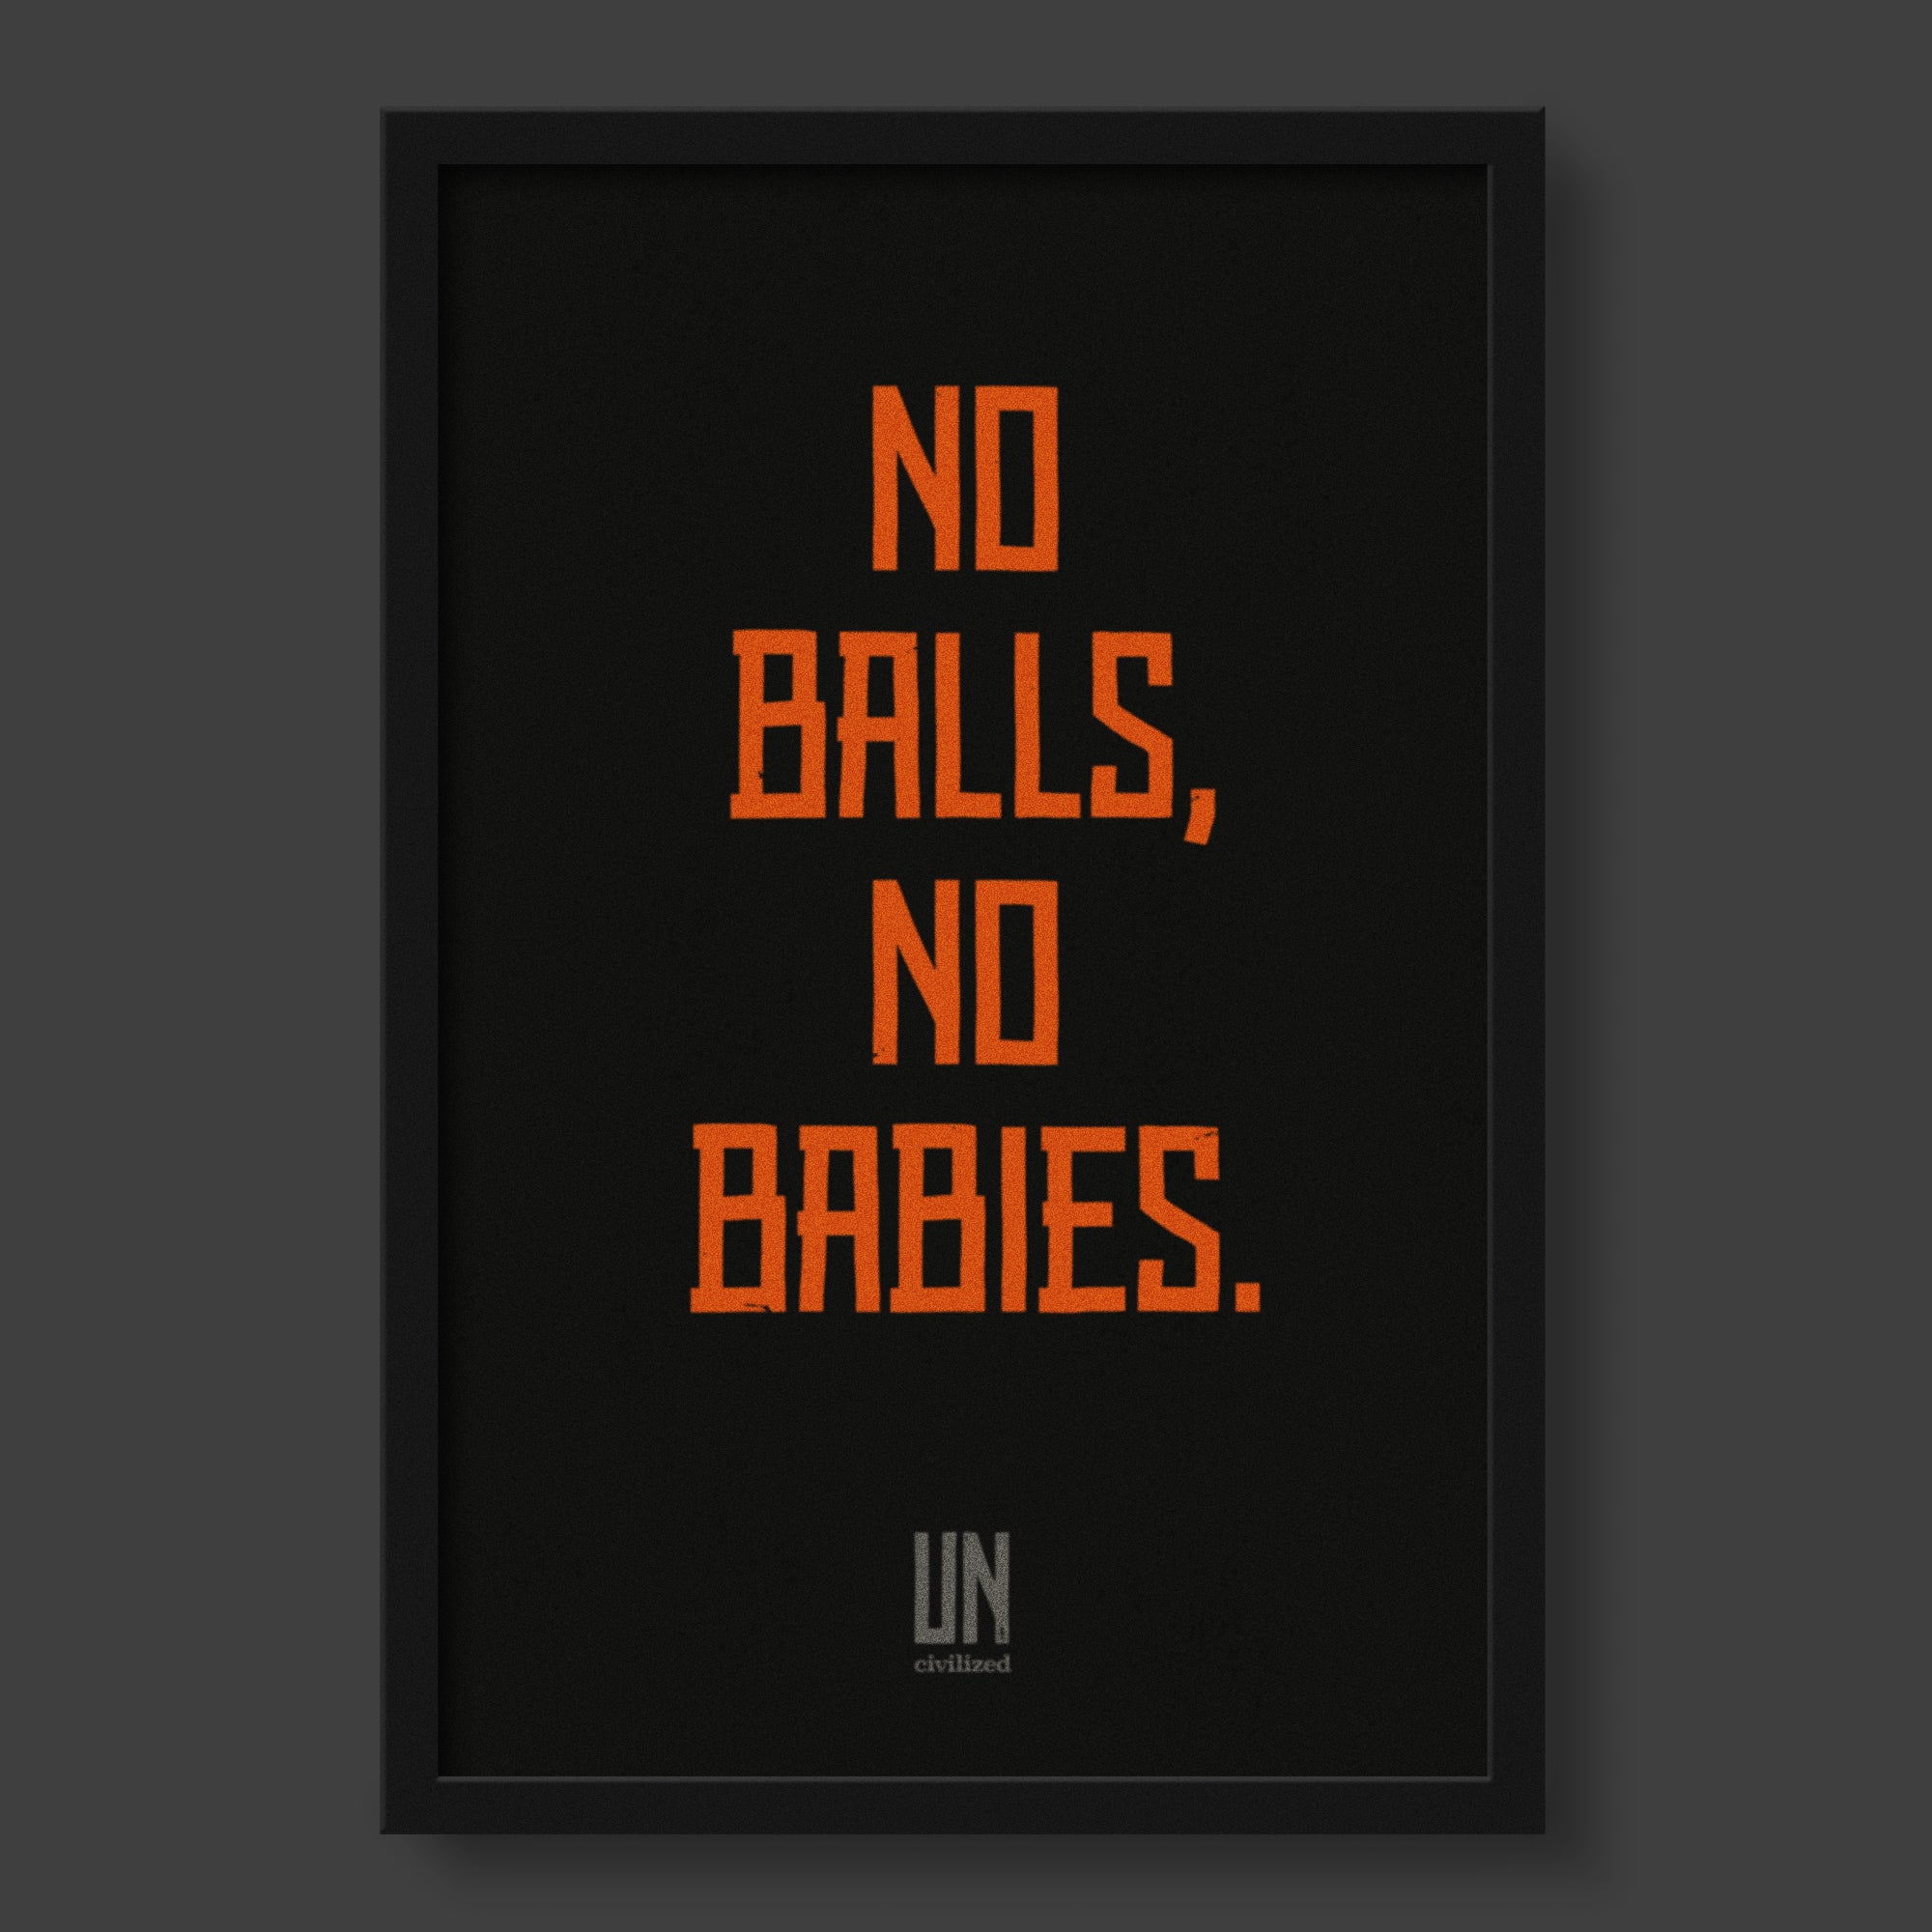 No Balls, No Babies Framed Poster